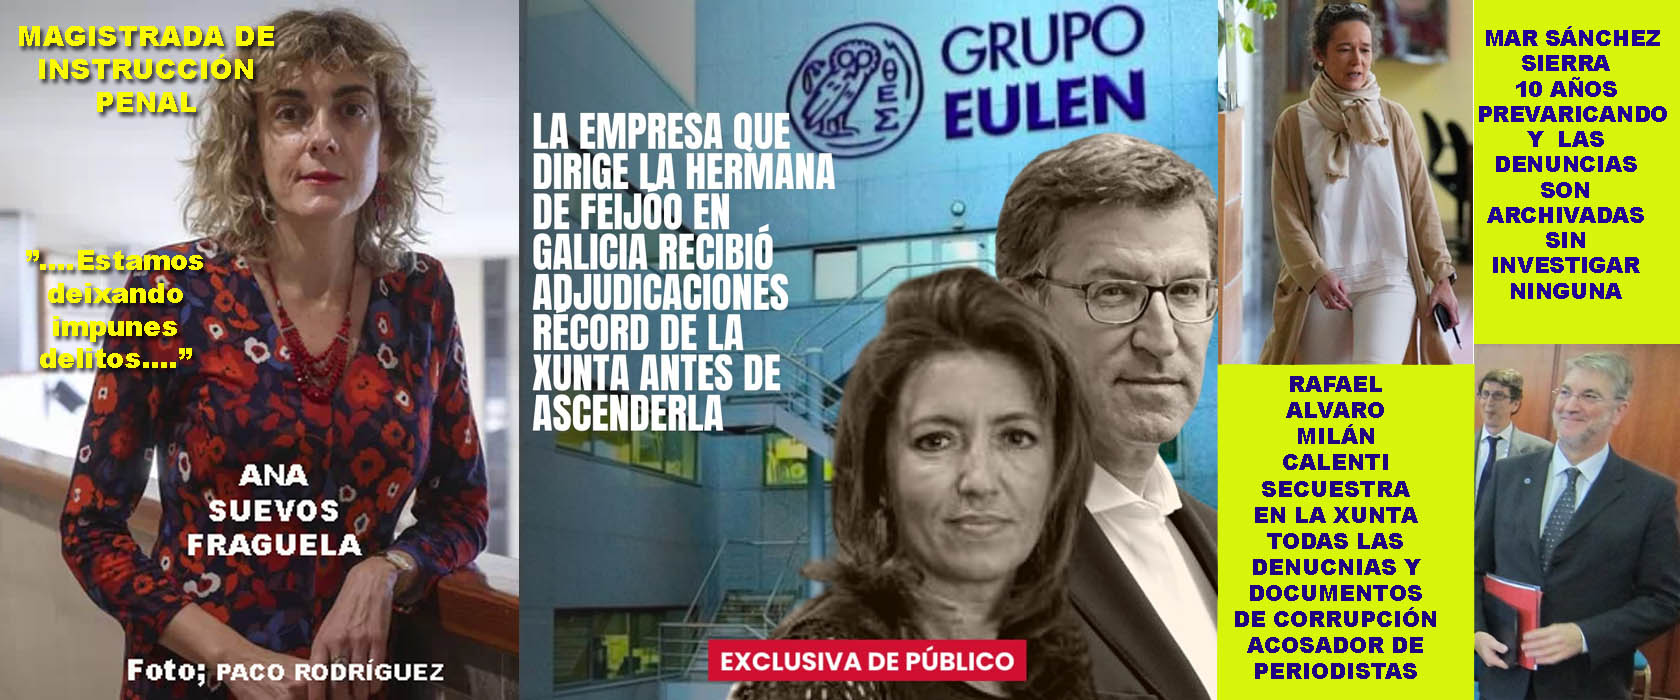 Xornal Galicia - Feijóo y Eva Cardenas están disfrutando de una mansión  ilegal en terreno reservado de derecho público.